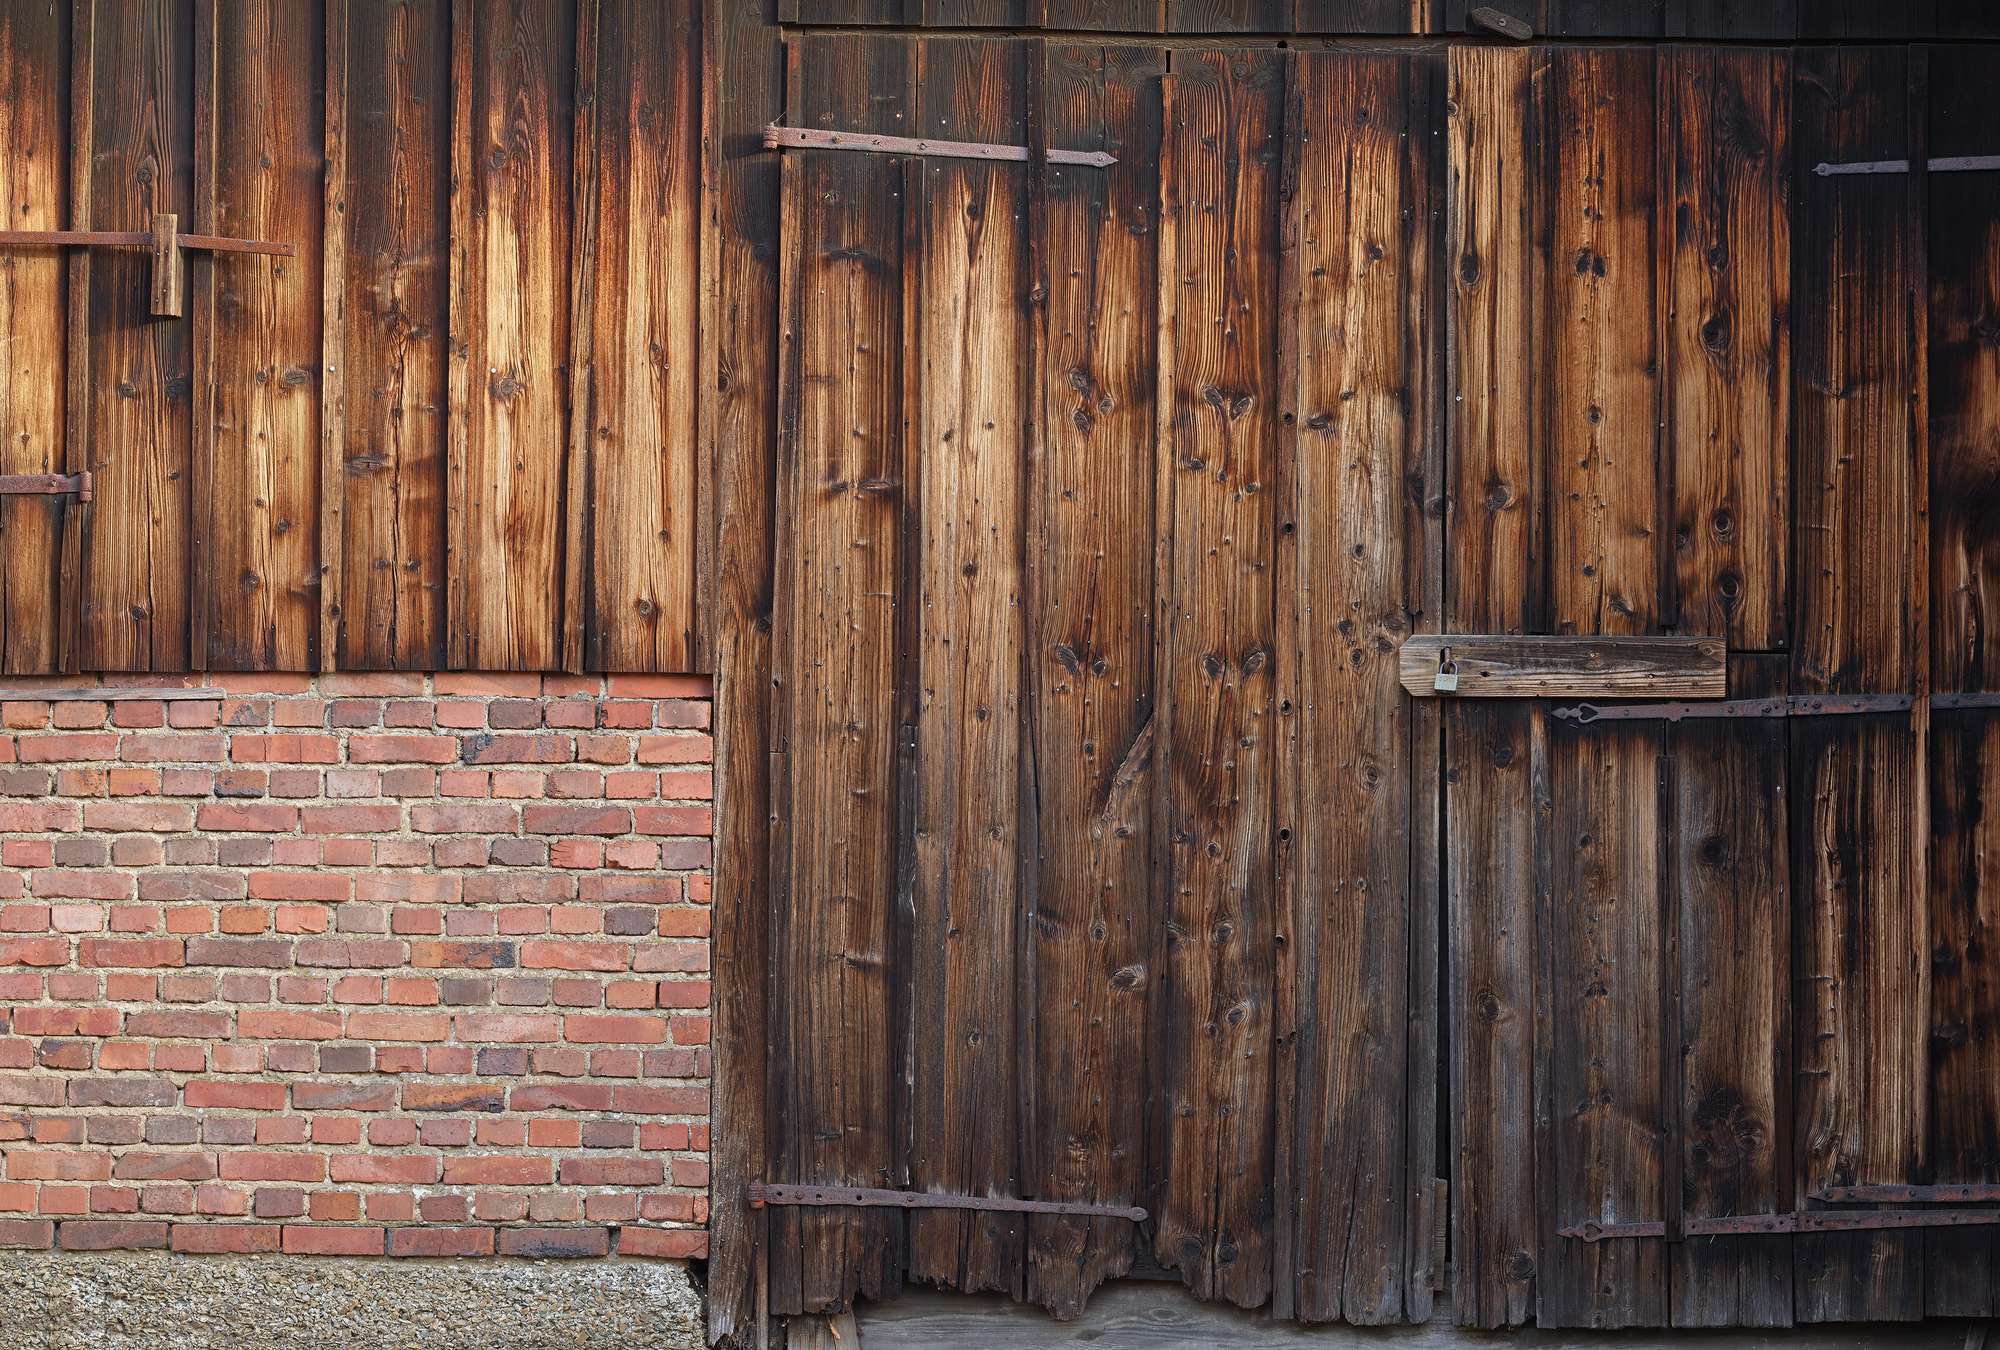             Fototapete rote Ziegelmauer mit Holzplanken und Scheunentor
        